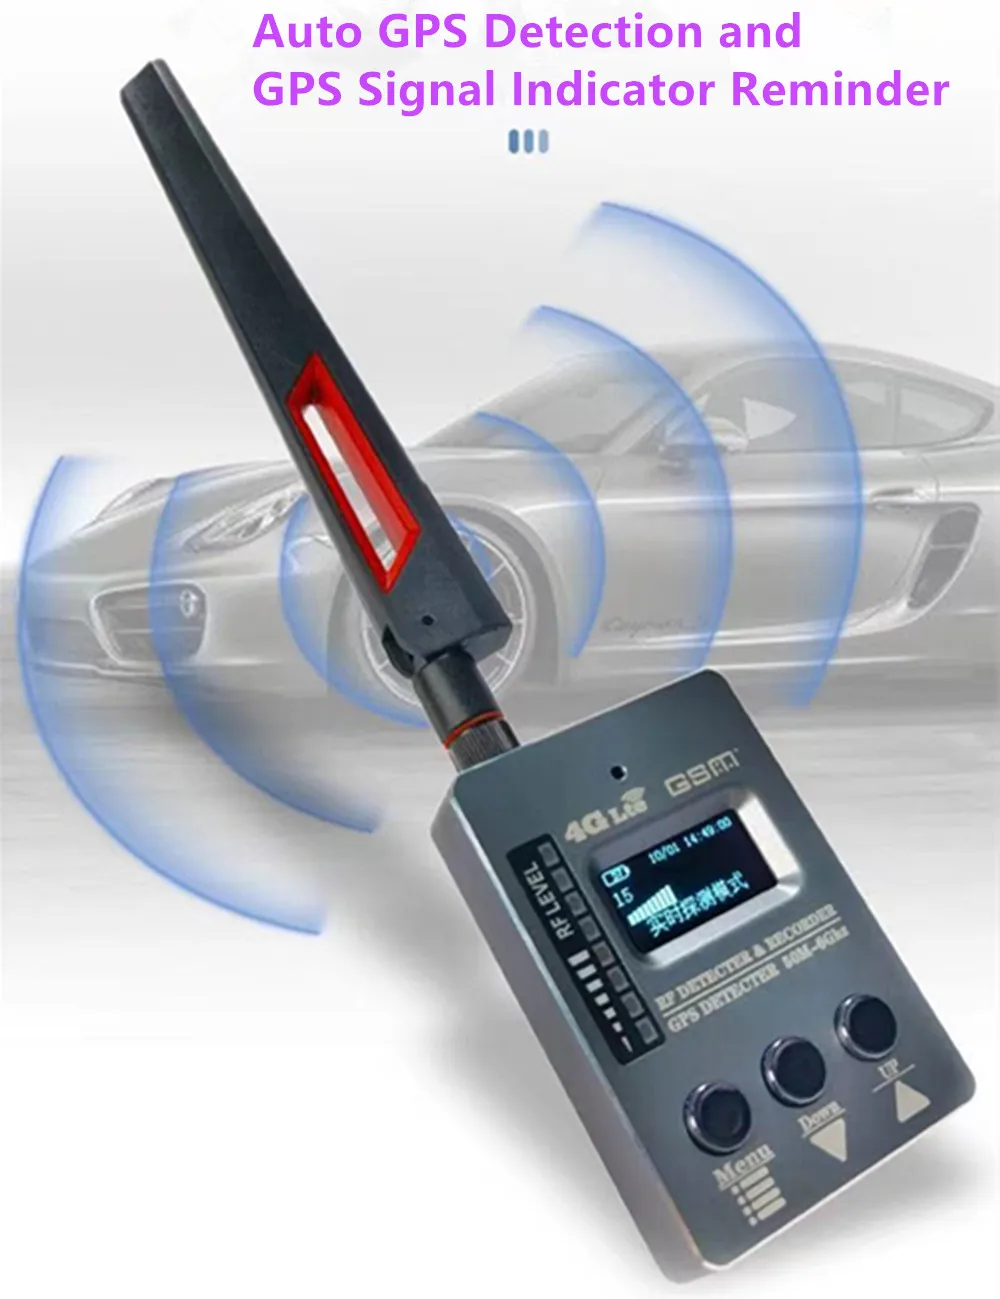 Detektor pelacak GPS DS996 dapat menemukan kamera tersembunyi termasuk kamera Mini perangkat mata-mata sinyal suara GSM nirkabel